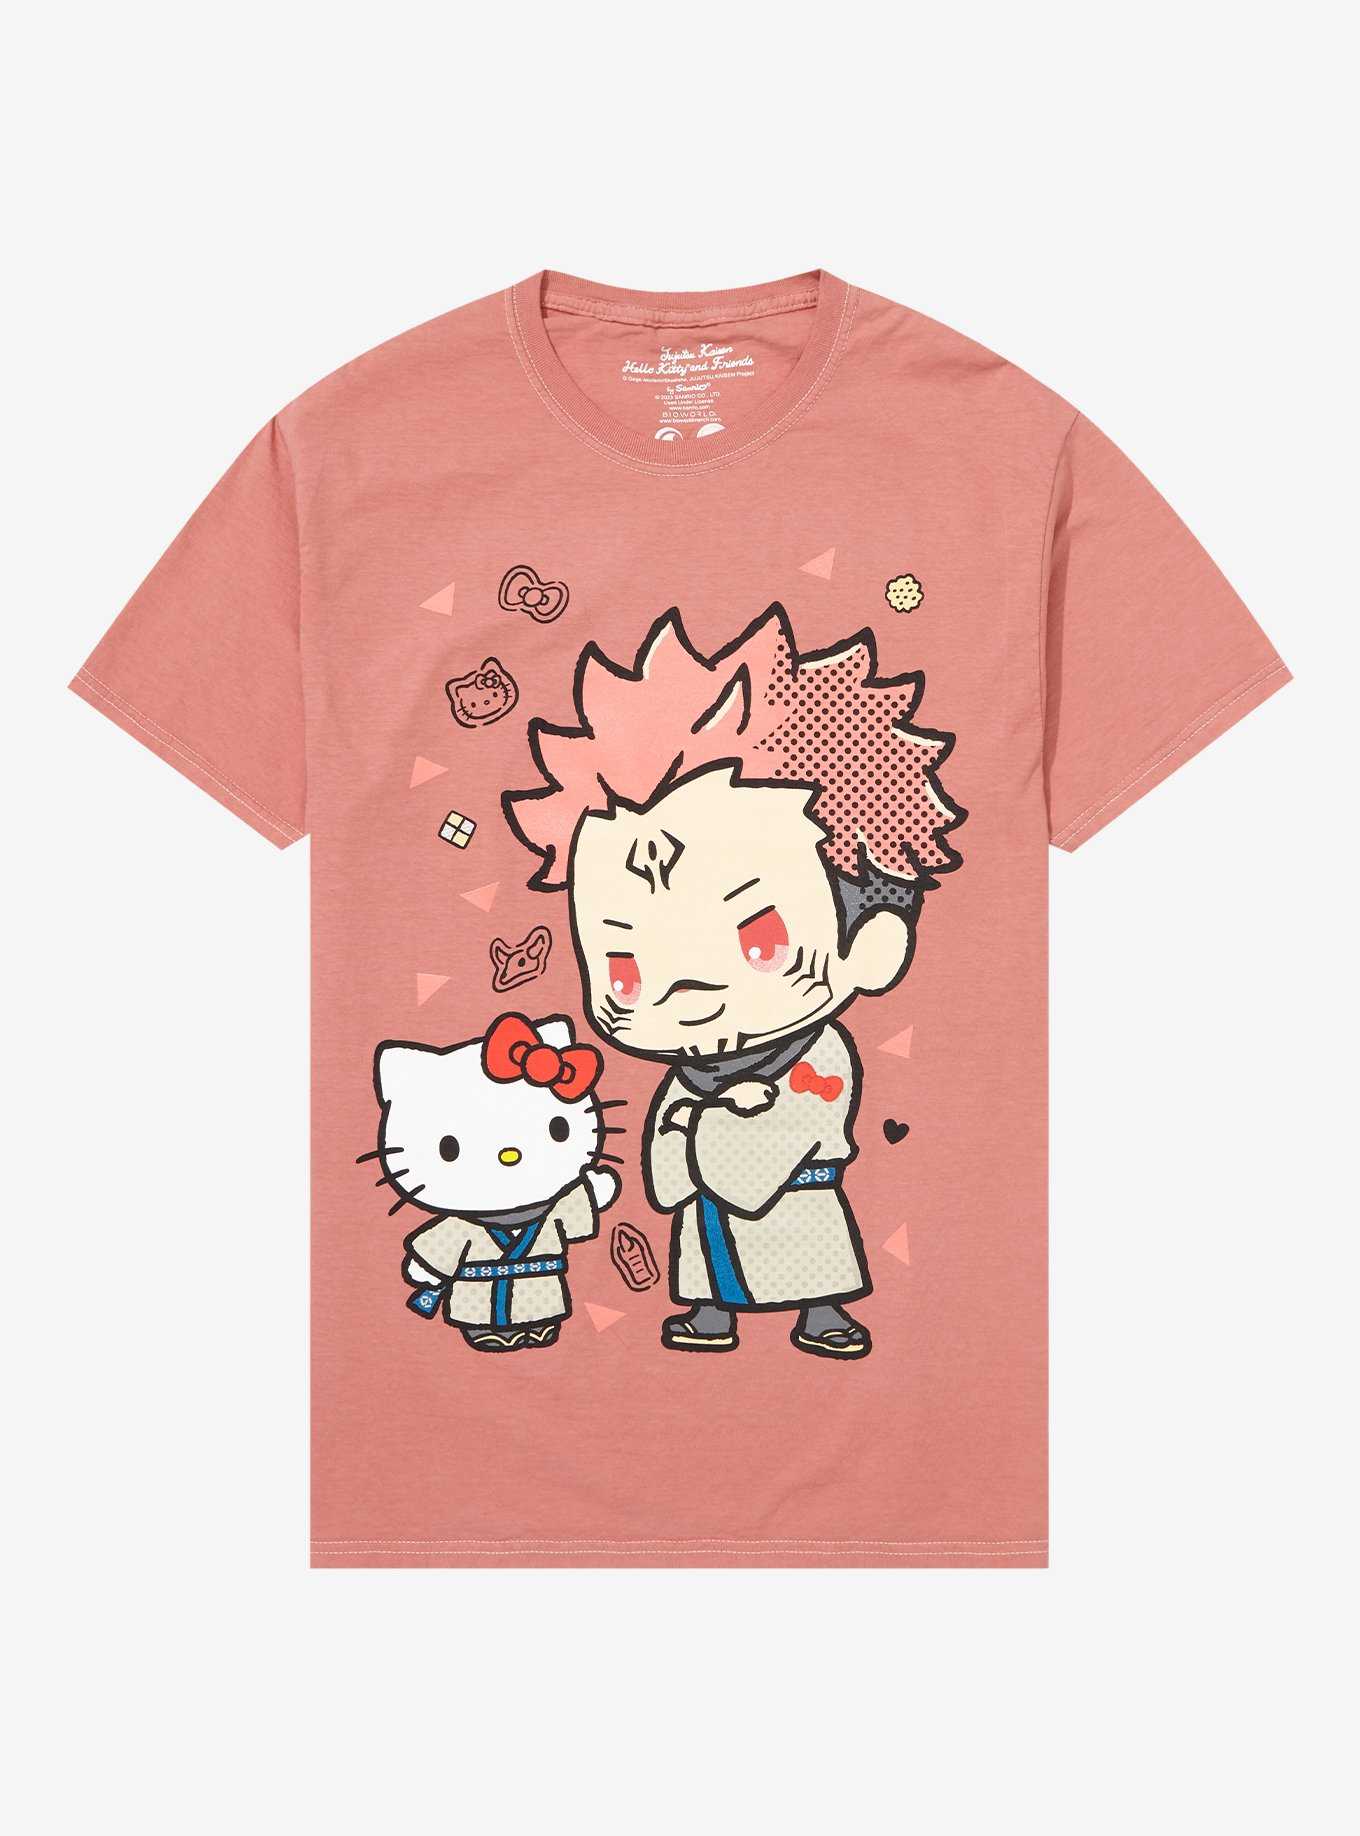 Jujutsu Kaisen X Hello Kitty And Friends Sukuna Boyfriend Fit Girls T-Shirt, , hi-res